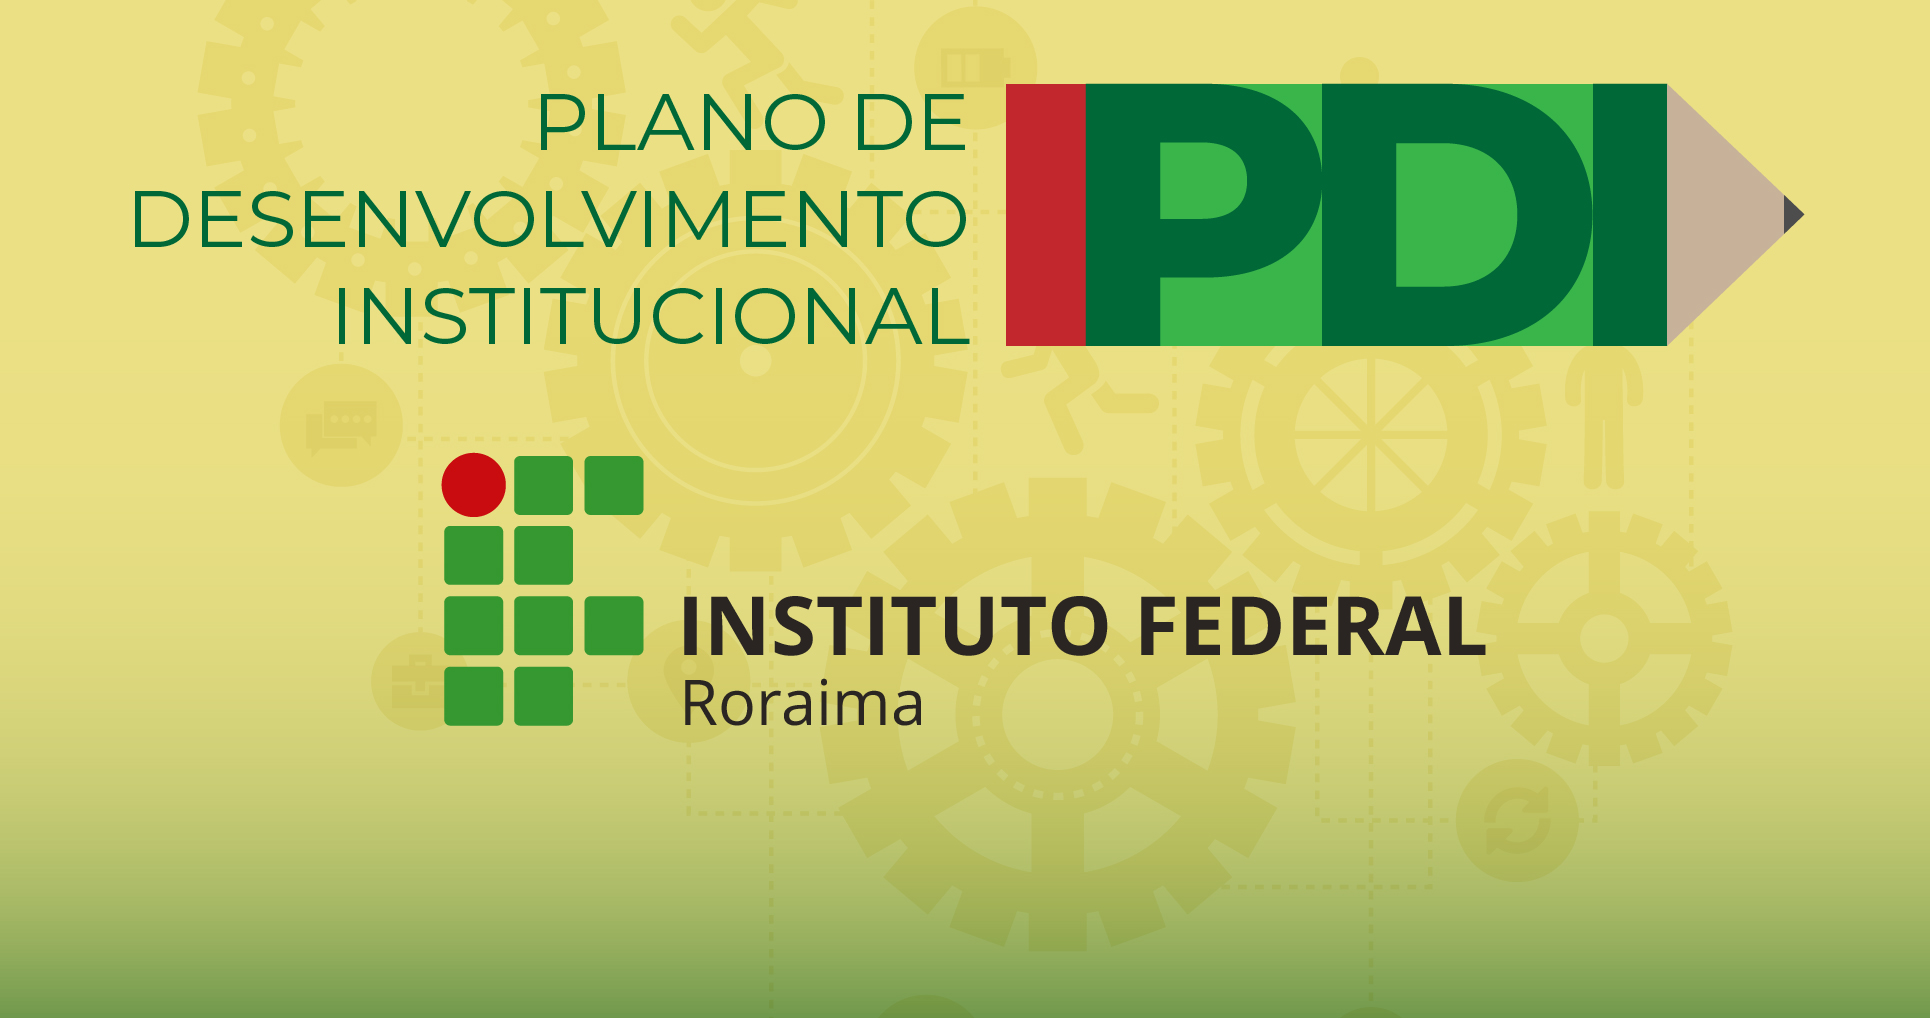 Novo Plano de Desenvolvimento Institucional do IFRR estará disponível para consulta pública em breve